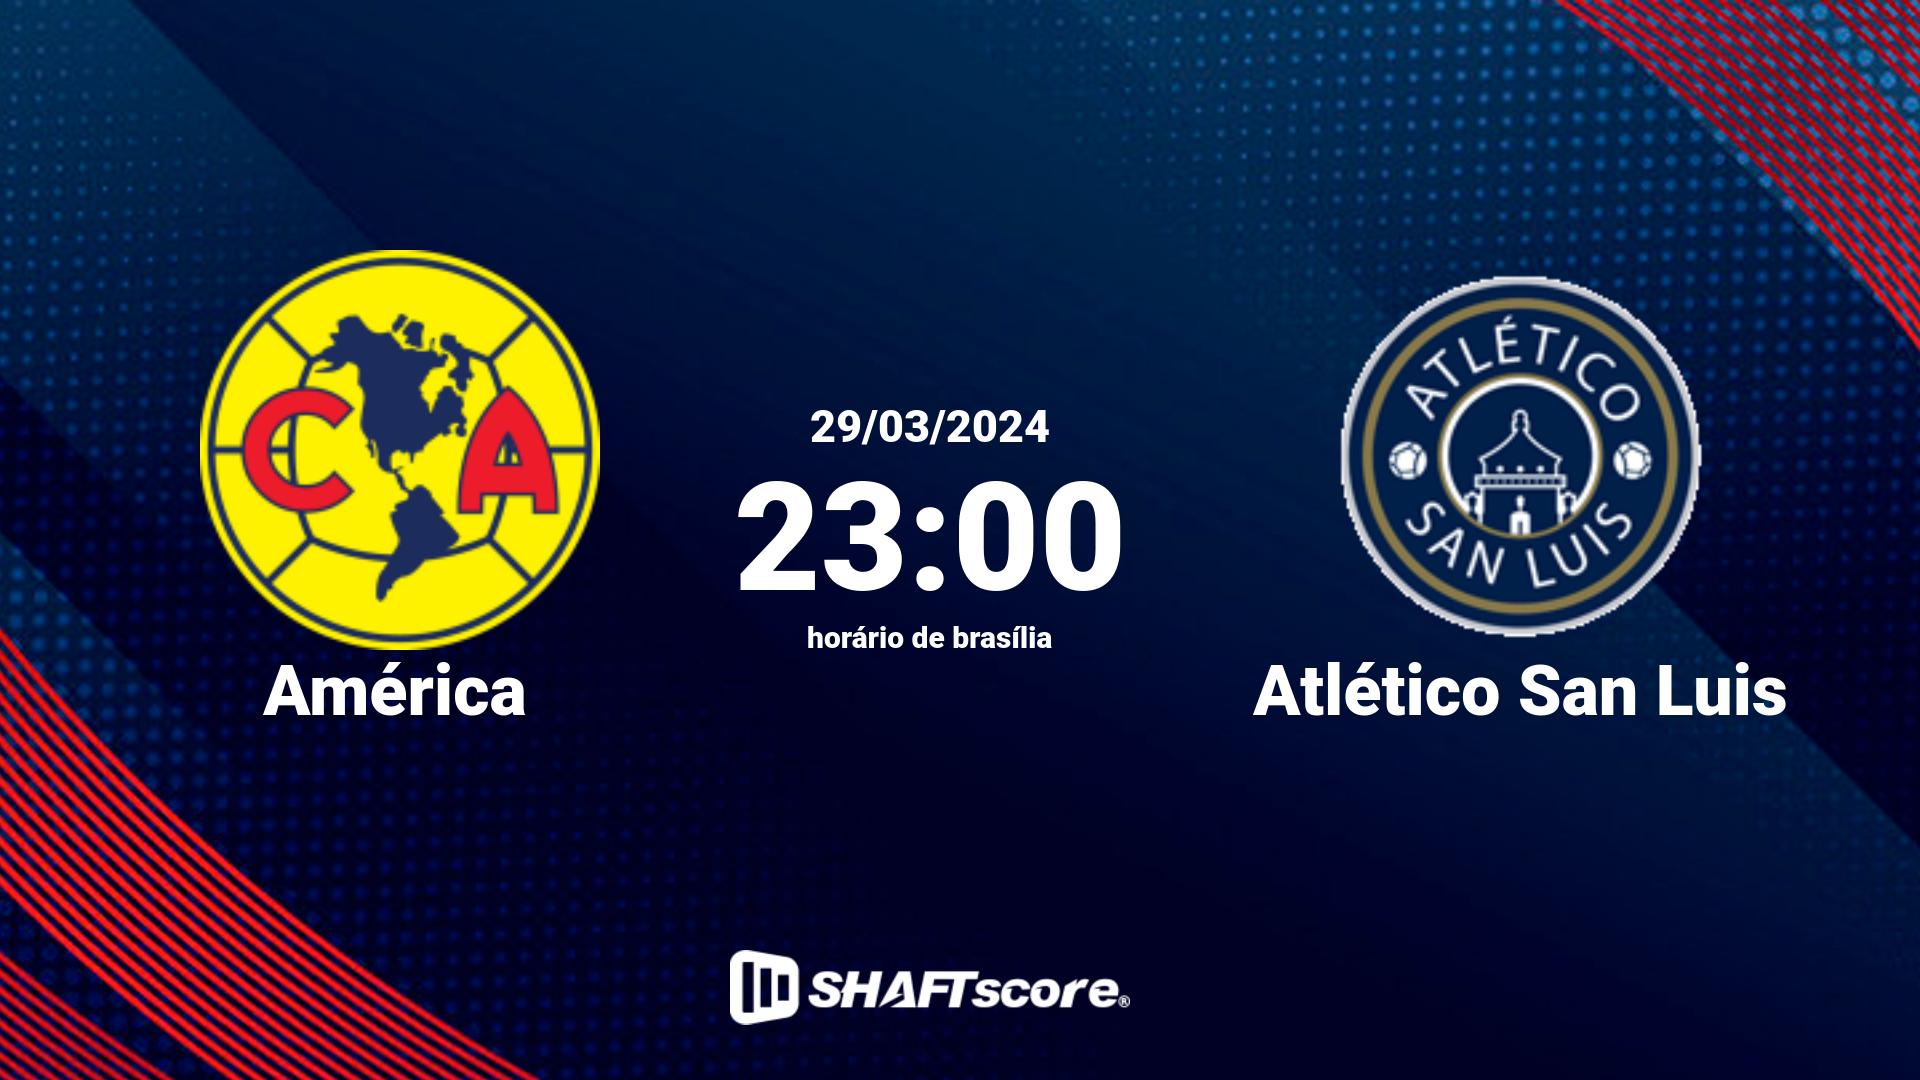 Estatísticas do jogo América vs Atlético San Luis 29.03 23:00